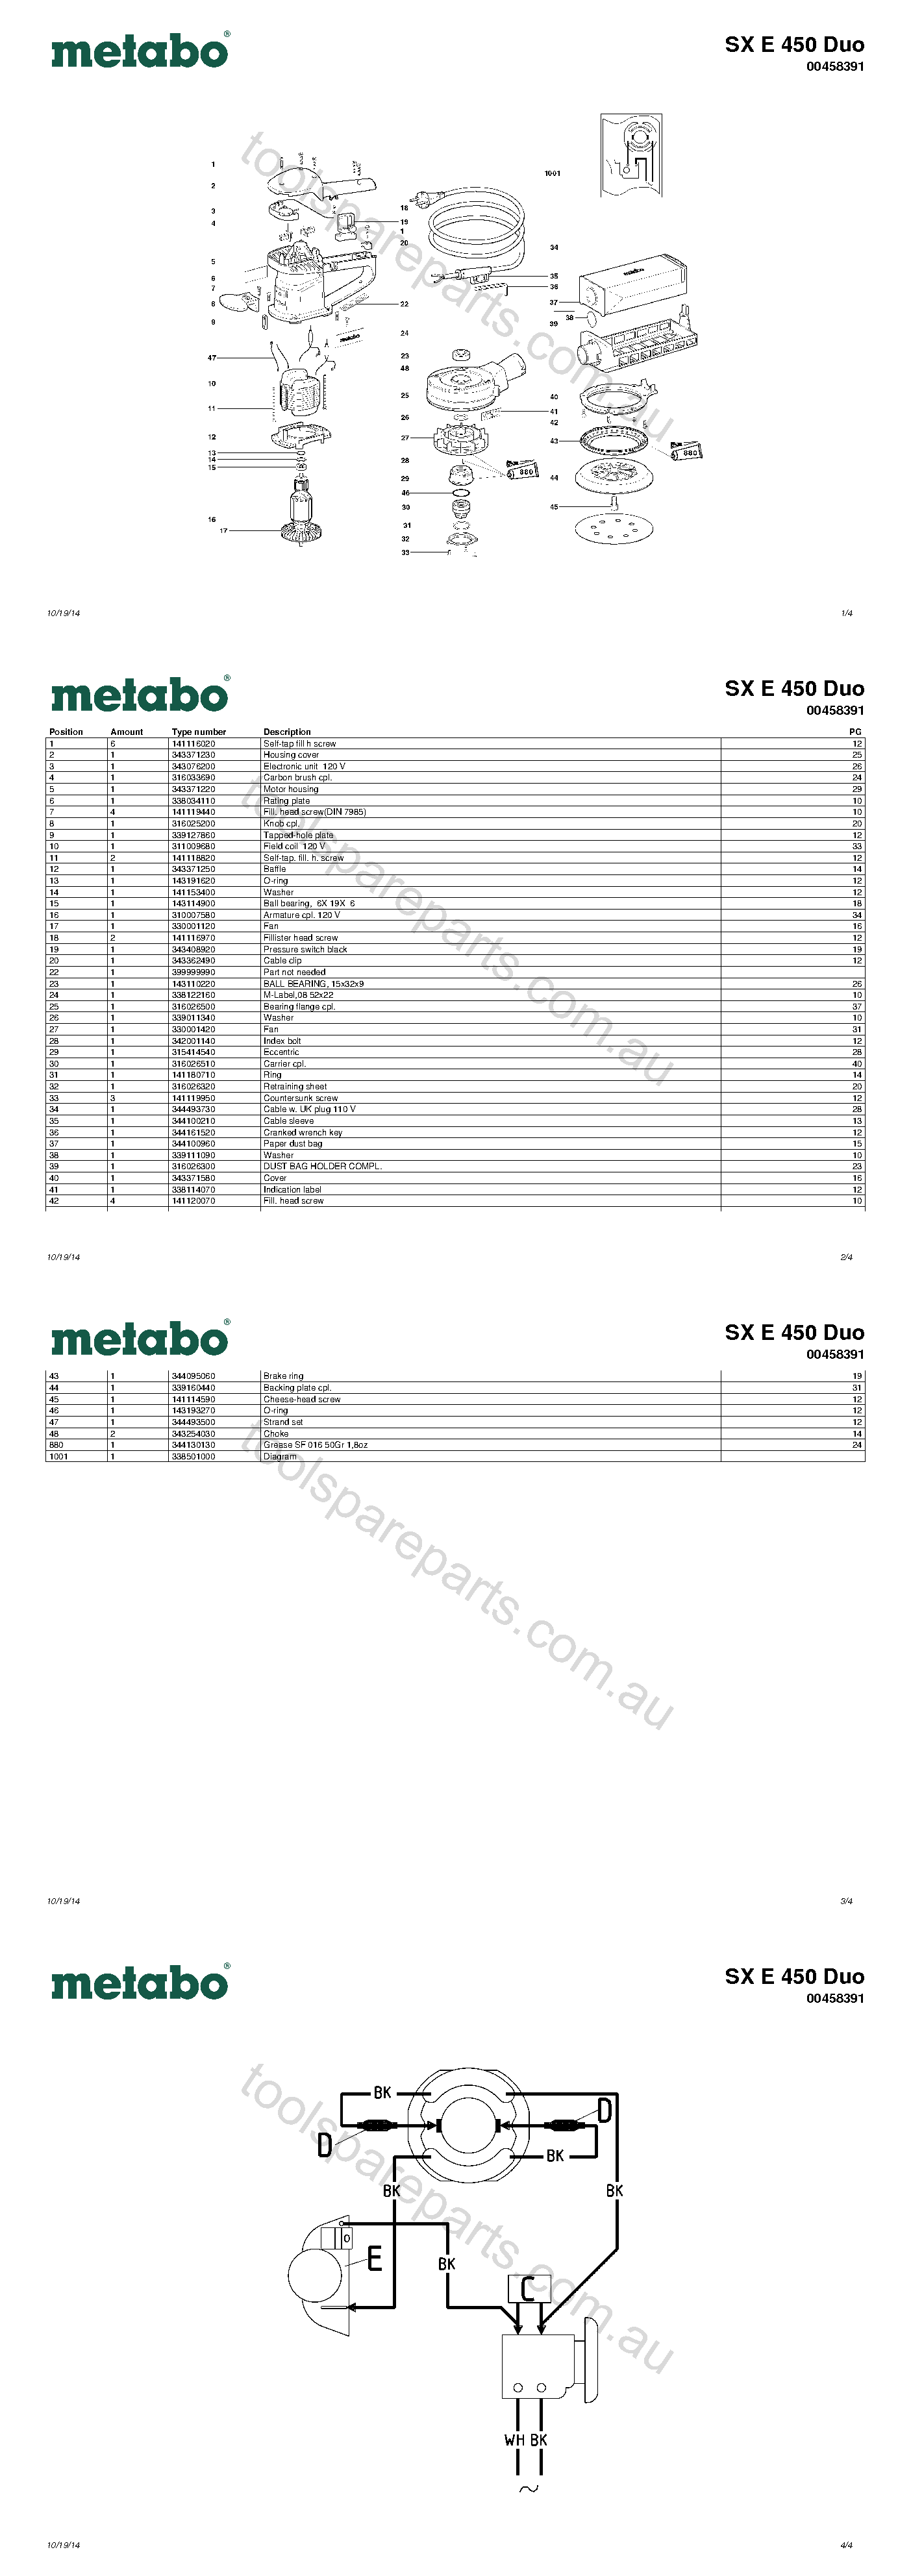 Metabo SX E 450 Duo 00458391  Diagram 1